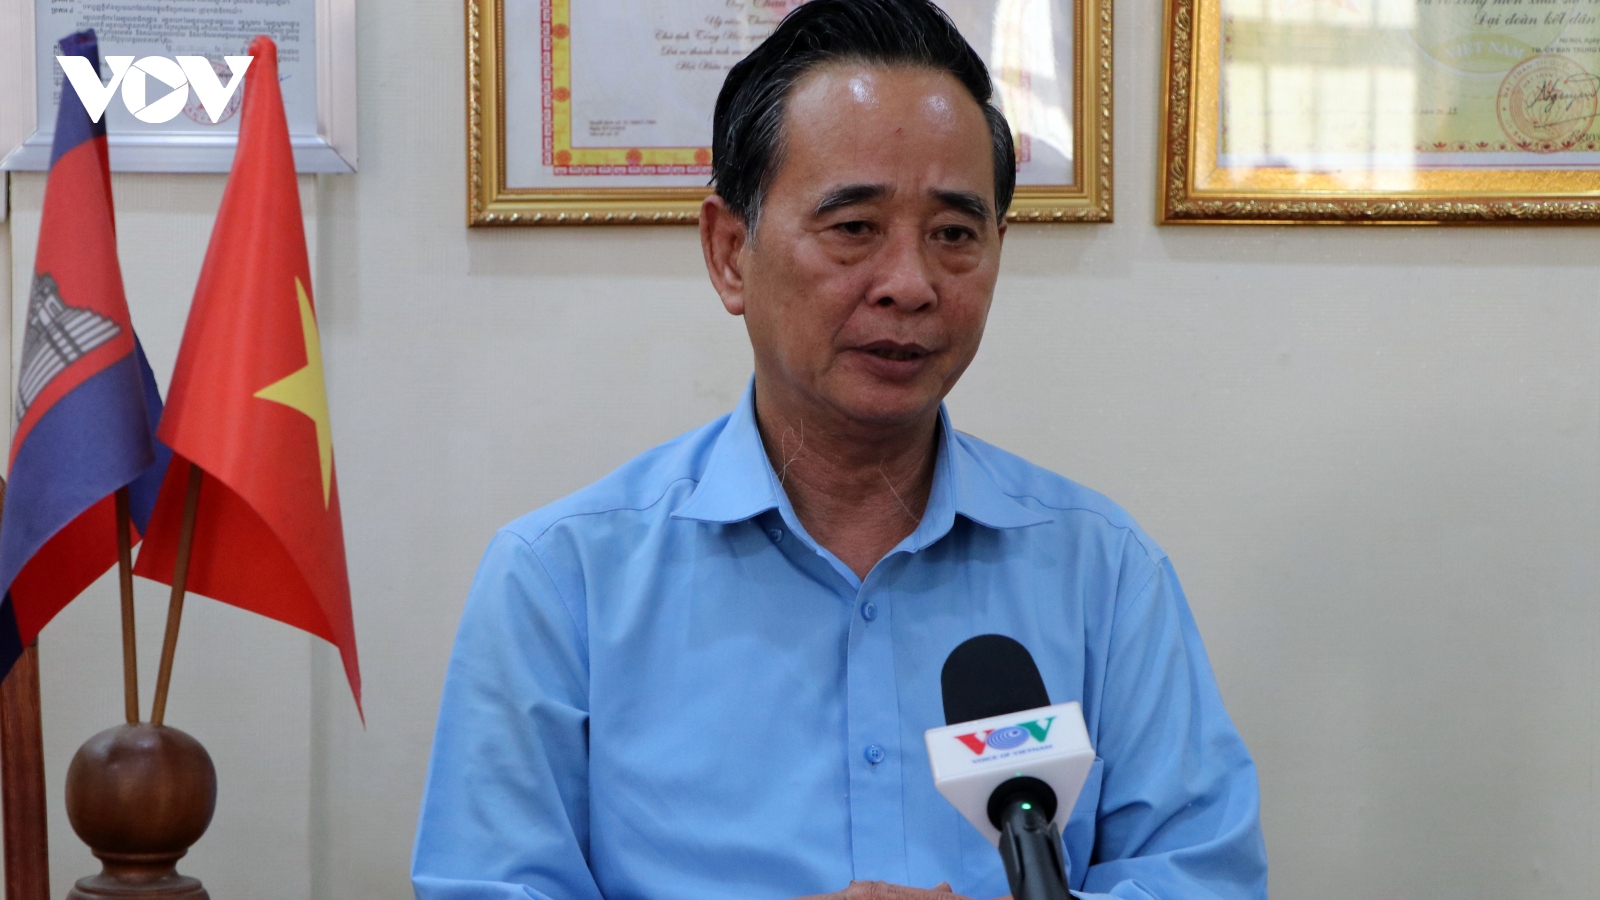 Cộng đồng người Việt tại Campuchia kỳ vọng vào thành công của Đại hội Đảng lần thứ XIII